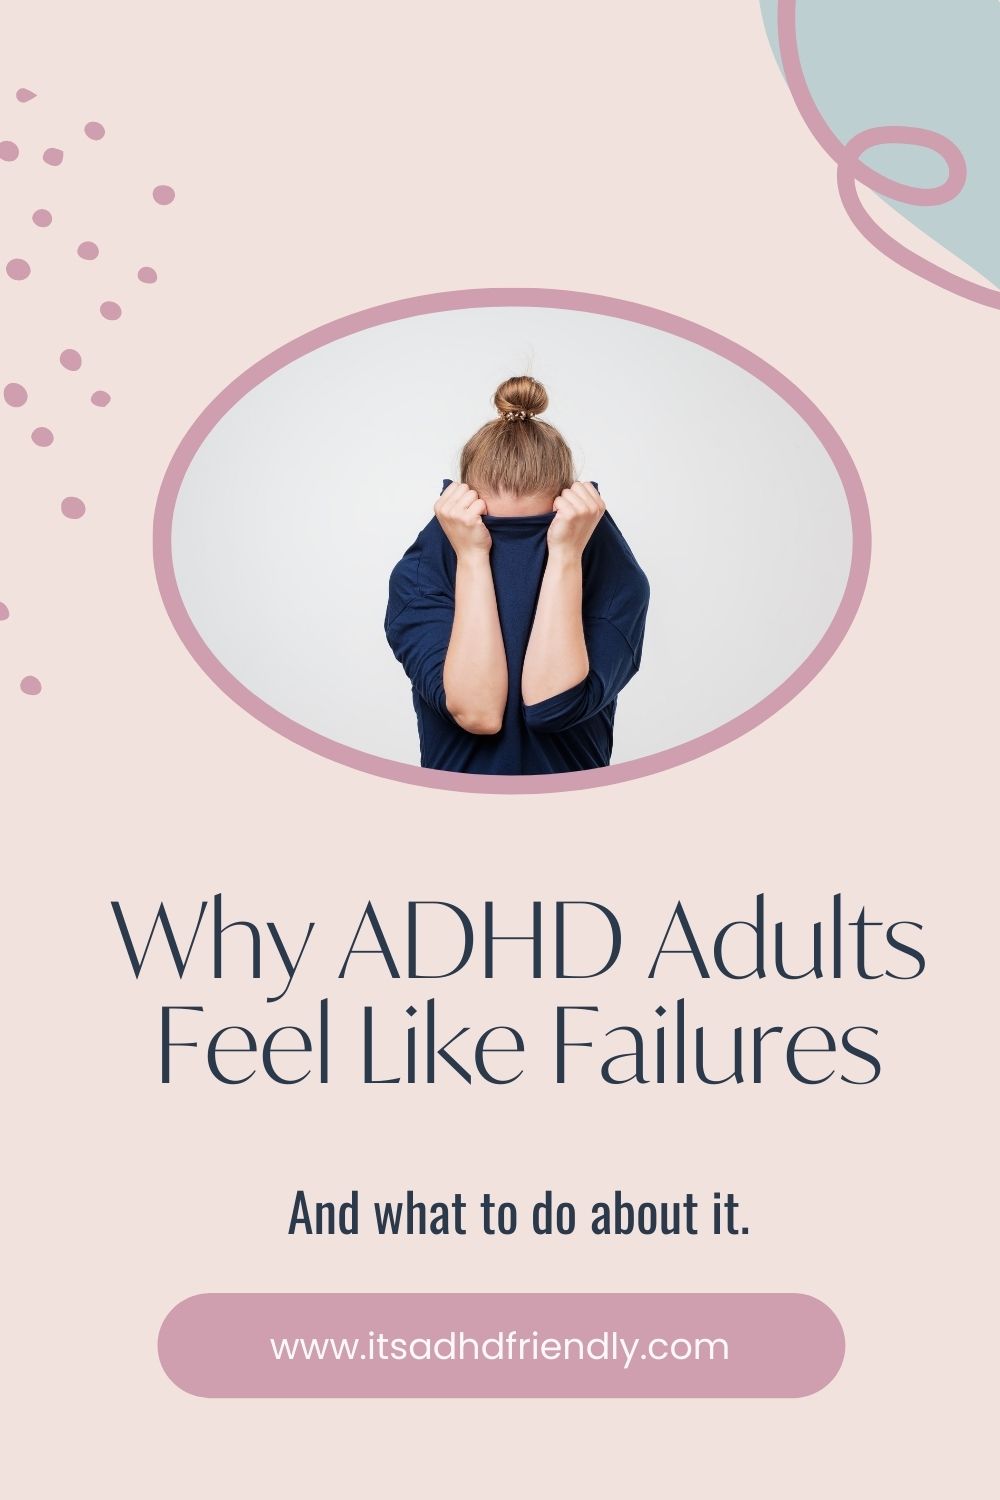 ADHD emotional Dyregulation